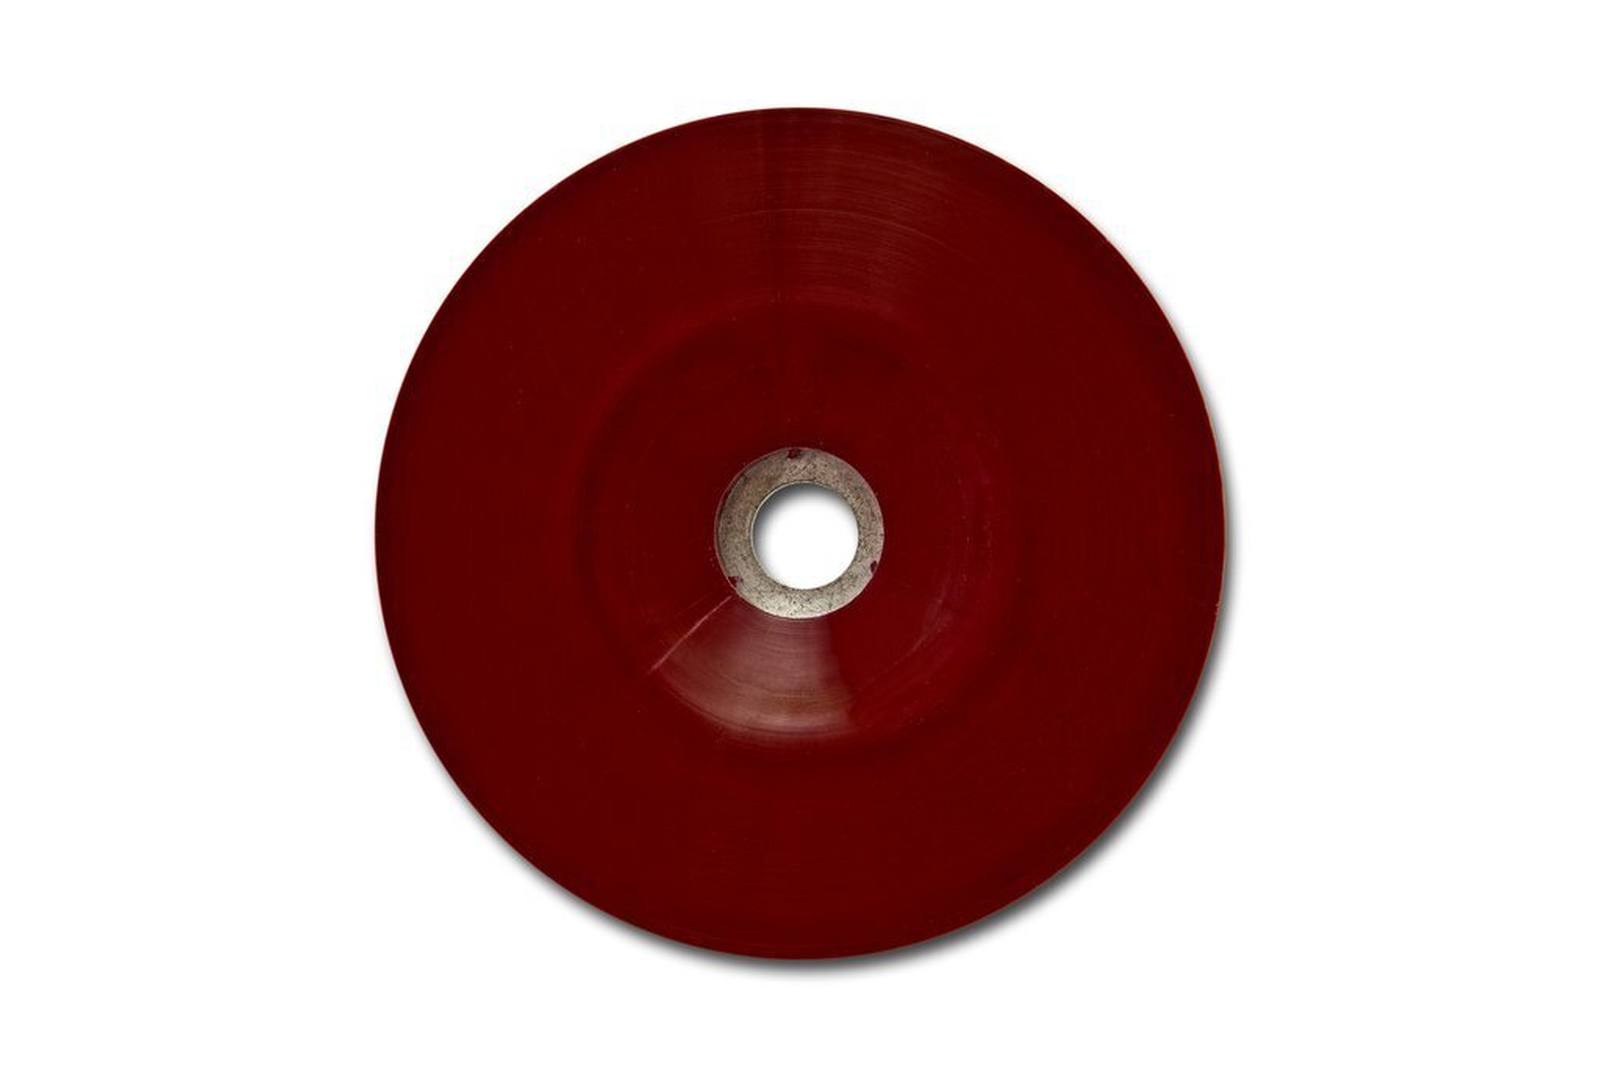 3M Plato soporte resistente, rojo, 115 mm, M14, plano, blando #64857